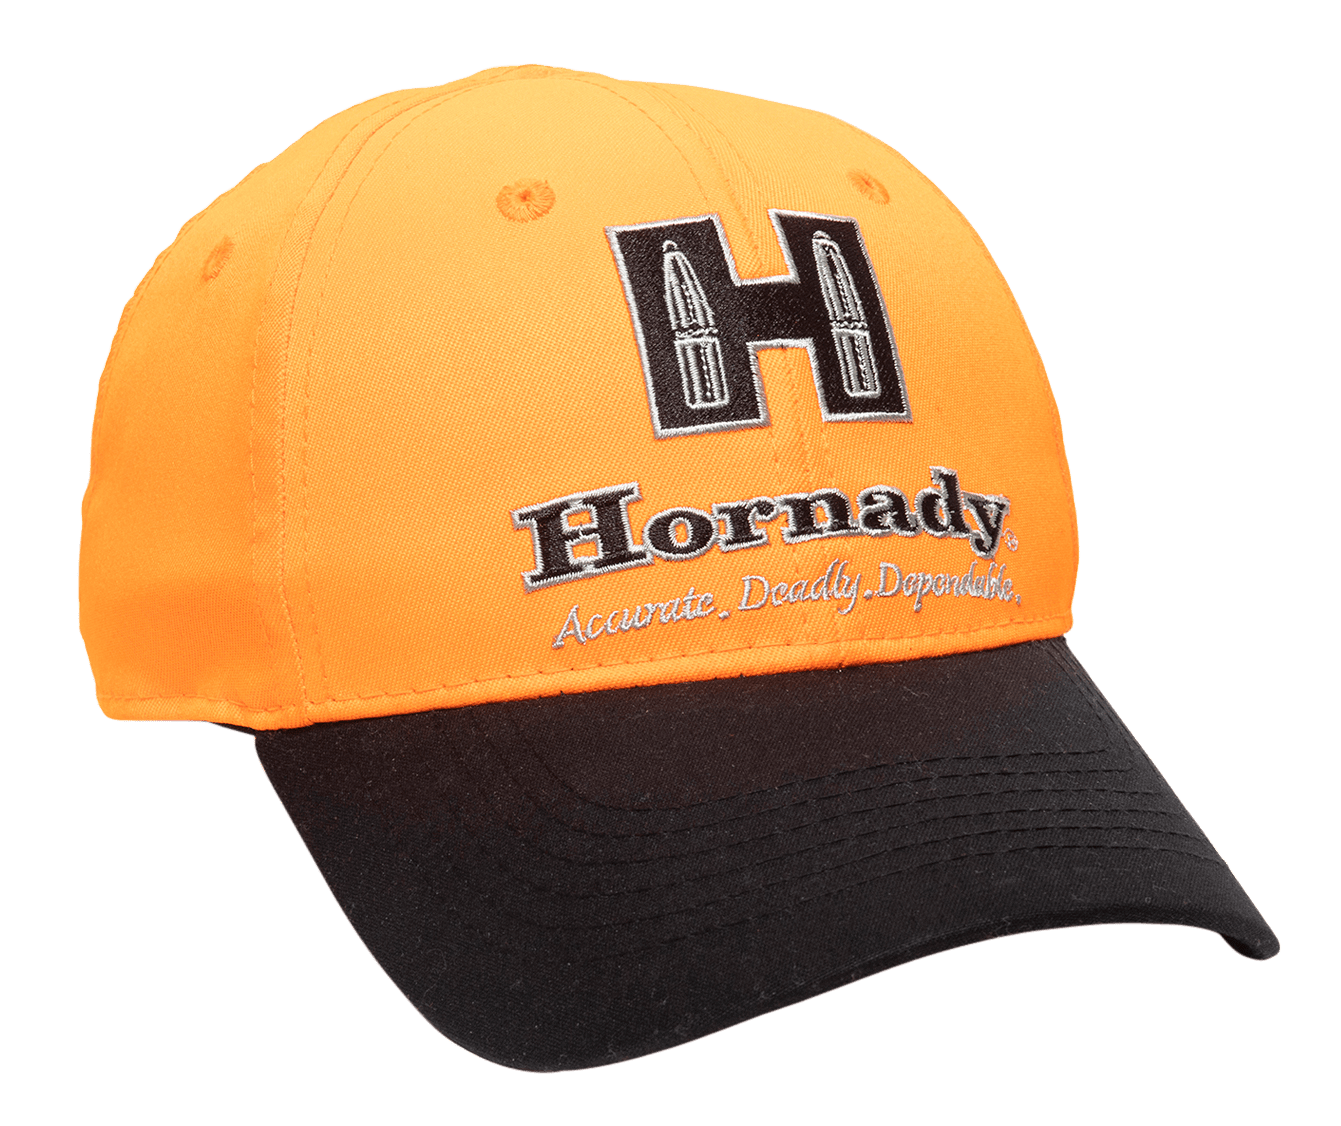 Outdoor Cap Outdoor Cap Hornady, Outdoor Hrn05a Hornady Hat Blaze/black Accessories